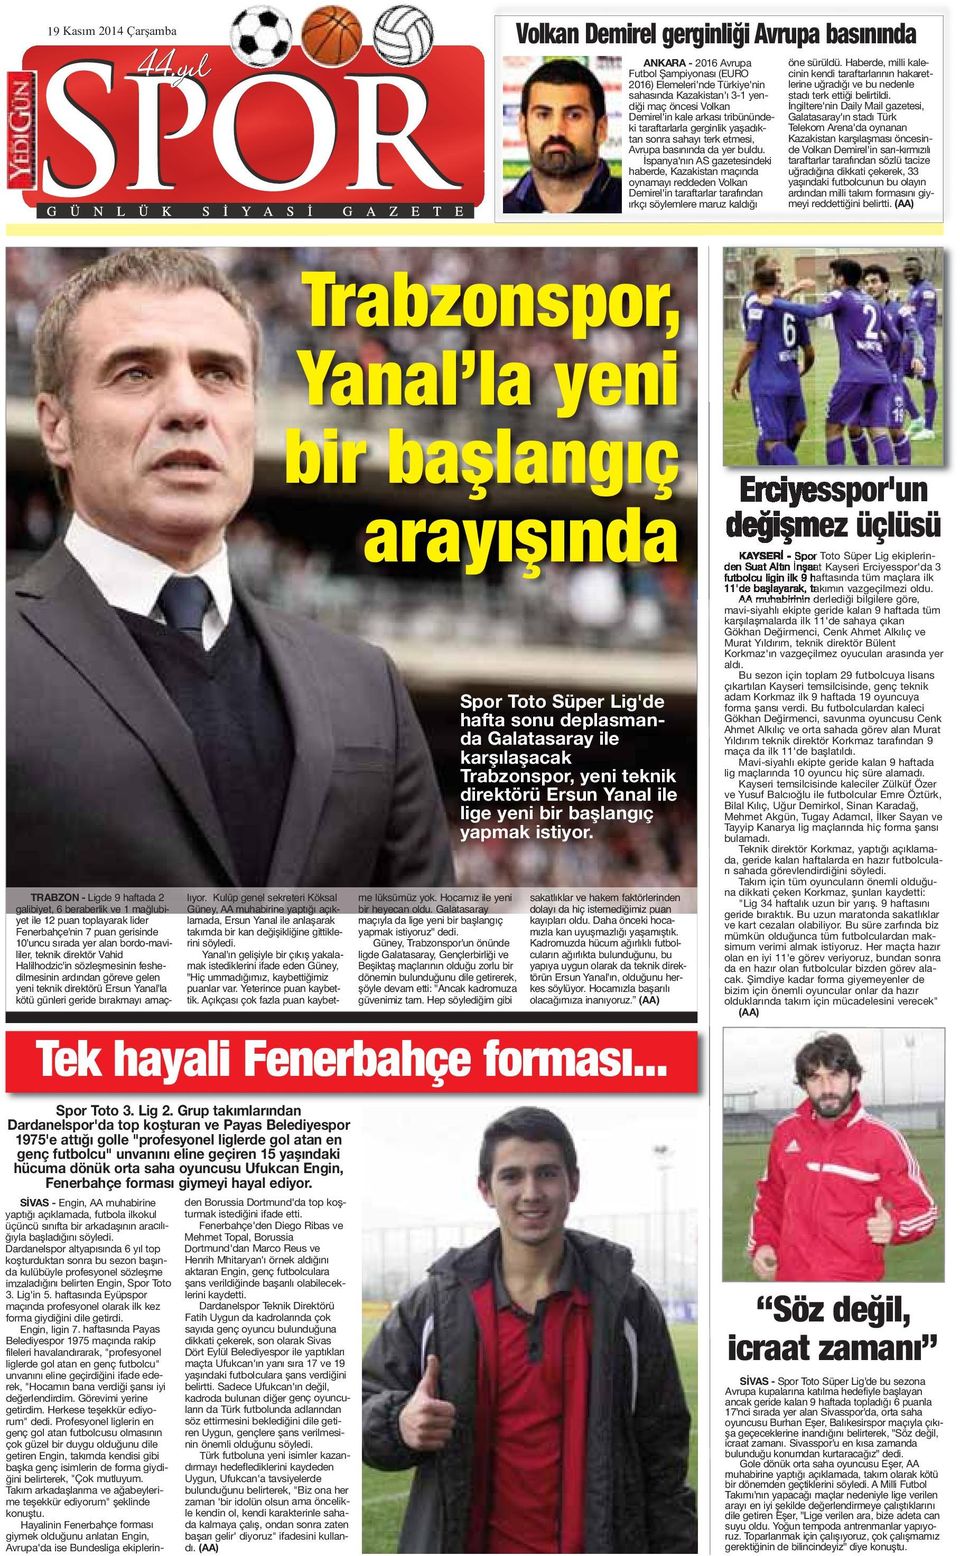 İspanya'nın AS gazetesindeki haberde, Kazakistan maçında oynamayı reddeden Volkan Demirel'in taraftarlar tarafından ırkçı söylemlere maruz kaldığı öne sürüldü.